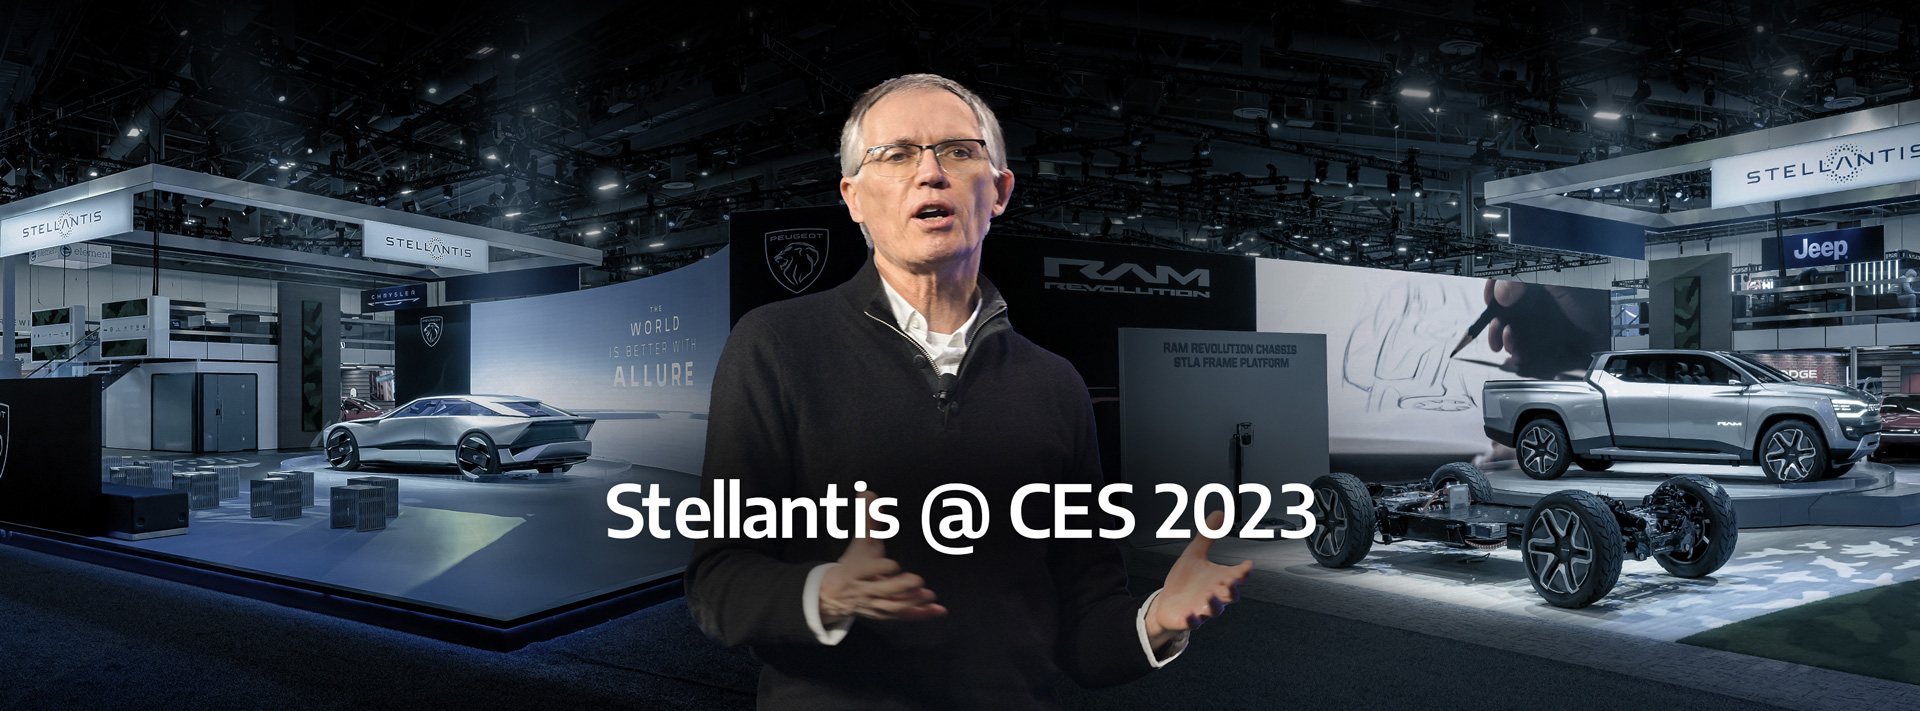 image hero of Stellantis @ CES 2023